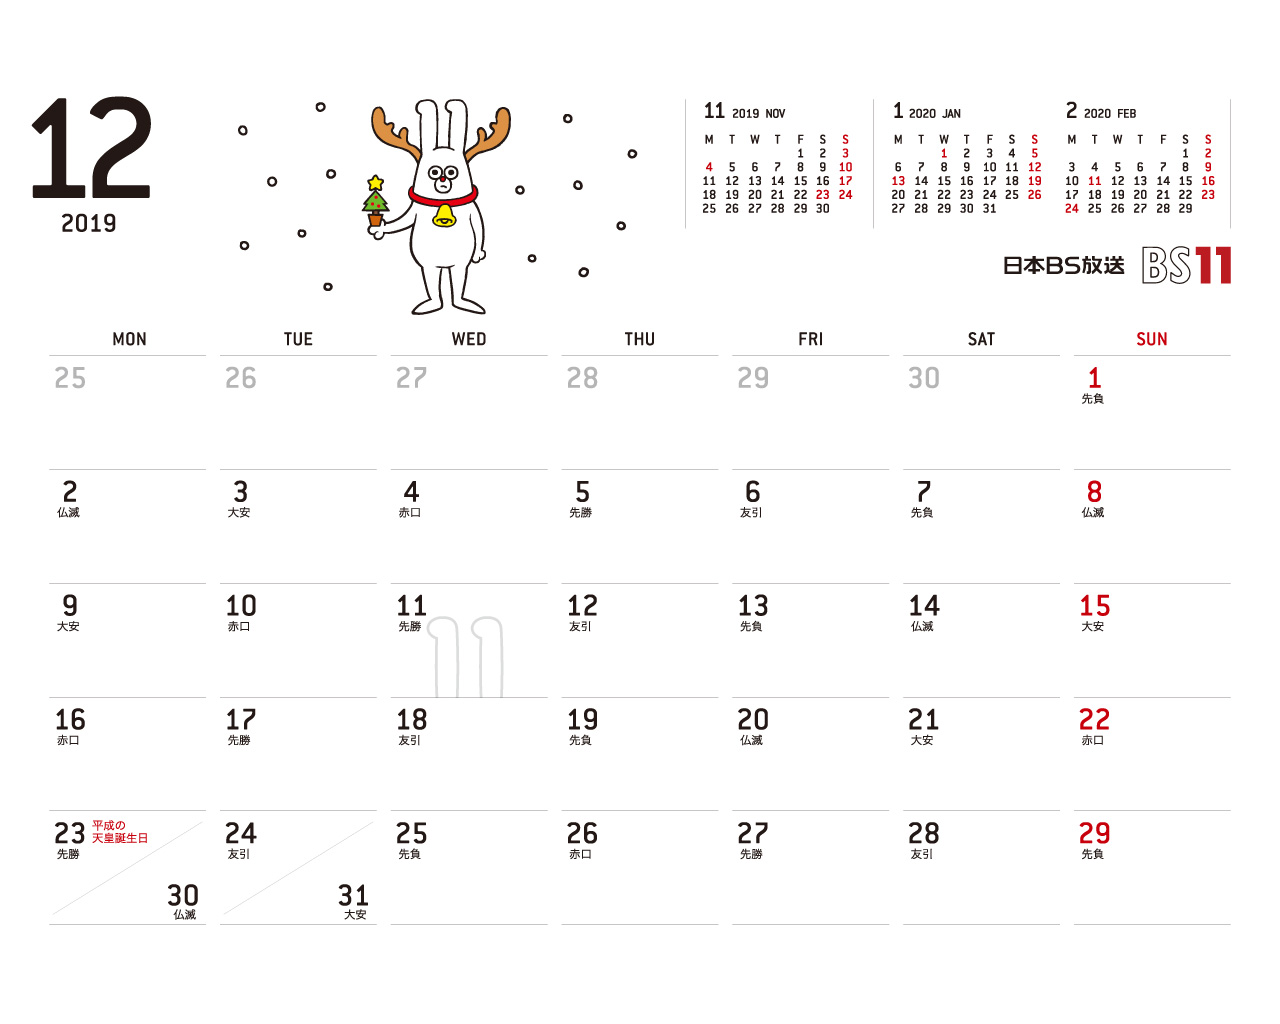 じゅういっちゃんのデジタルカレンダー19年12月 Bs11 イレブン いつでも無料放送